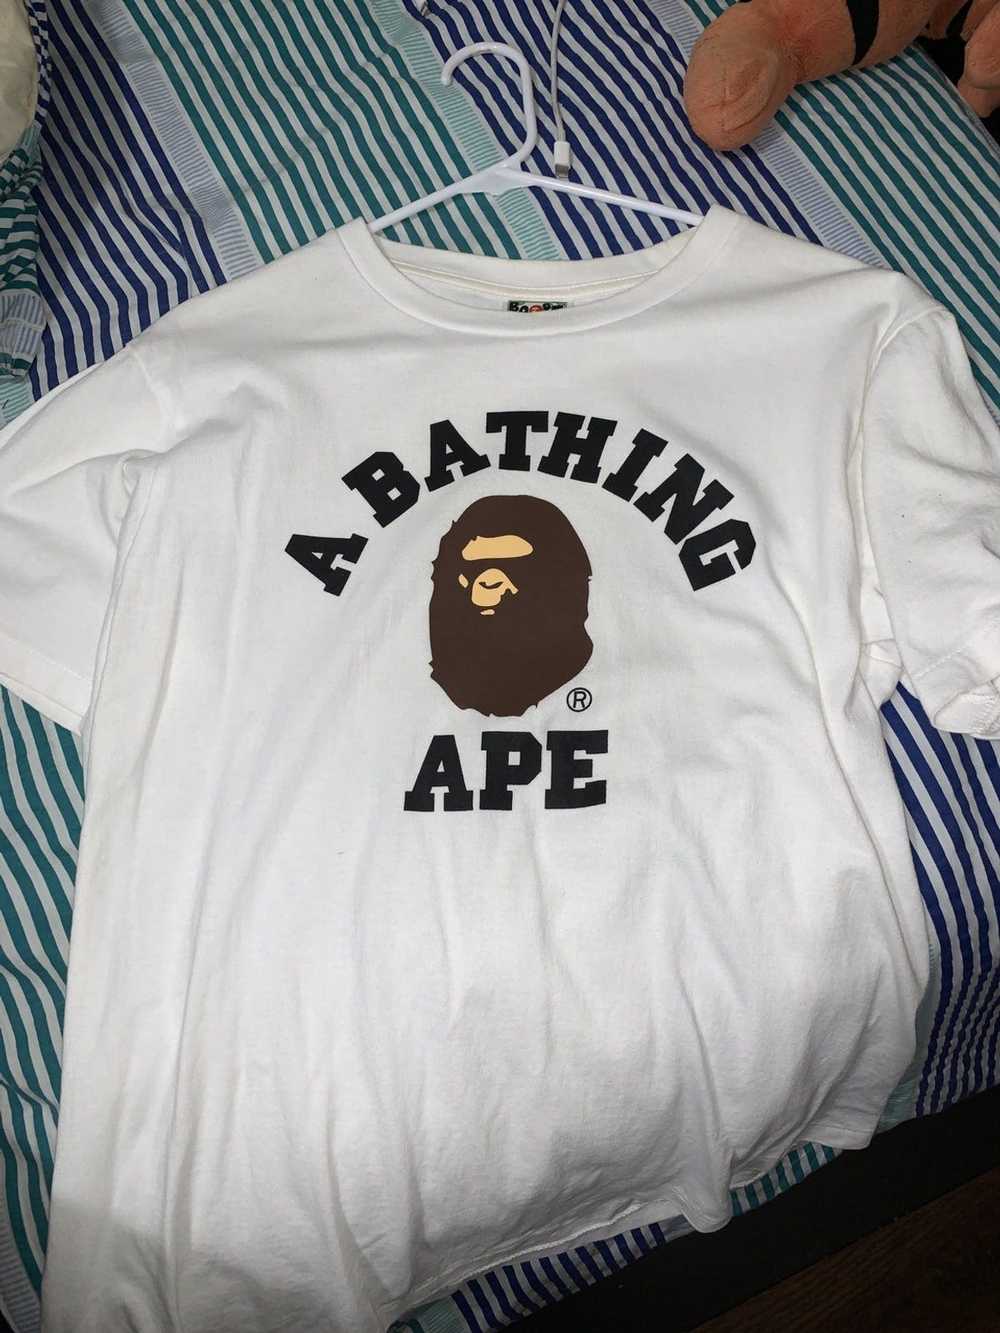 Bape A Bathing Ape - image 1